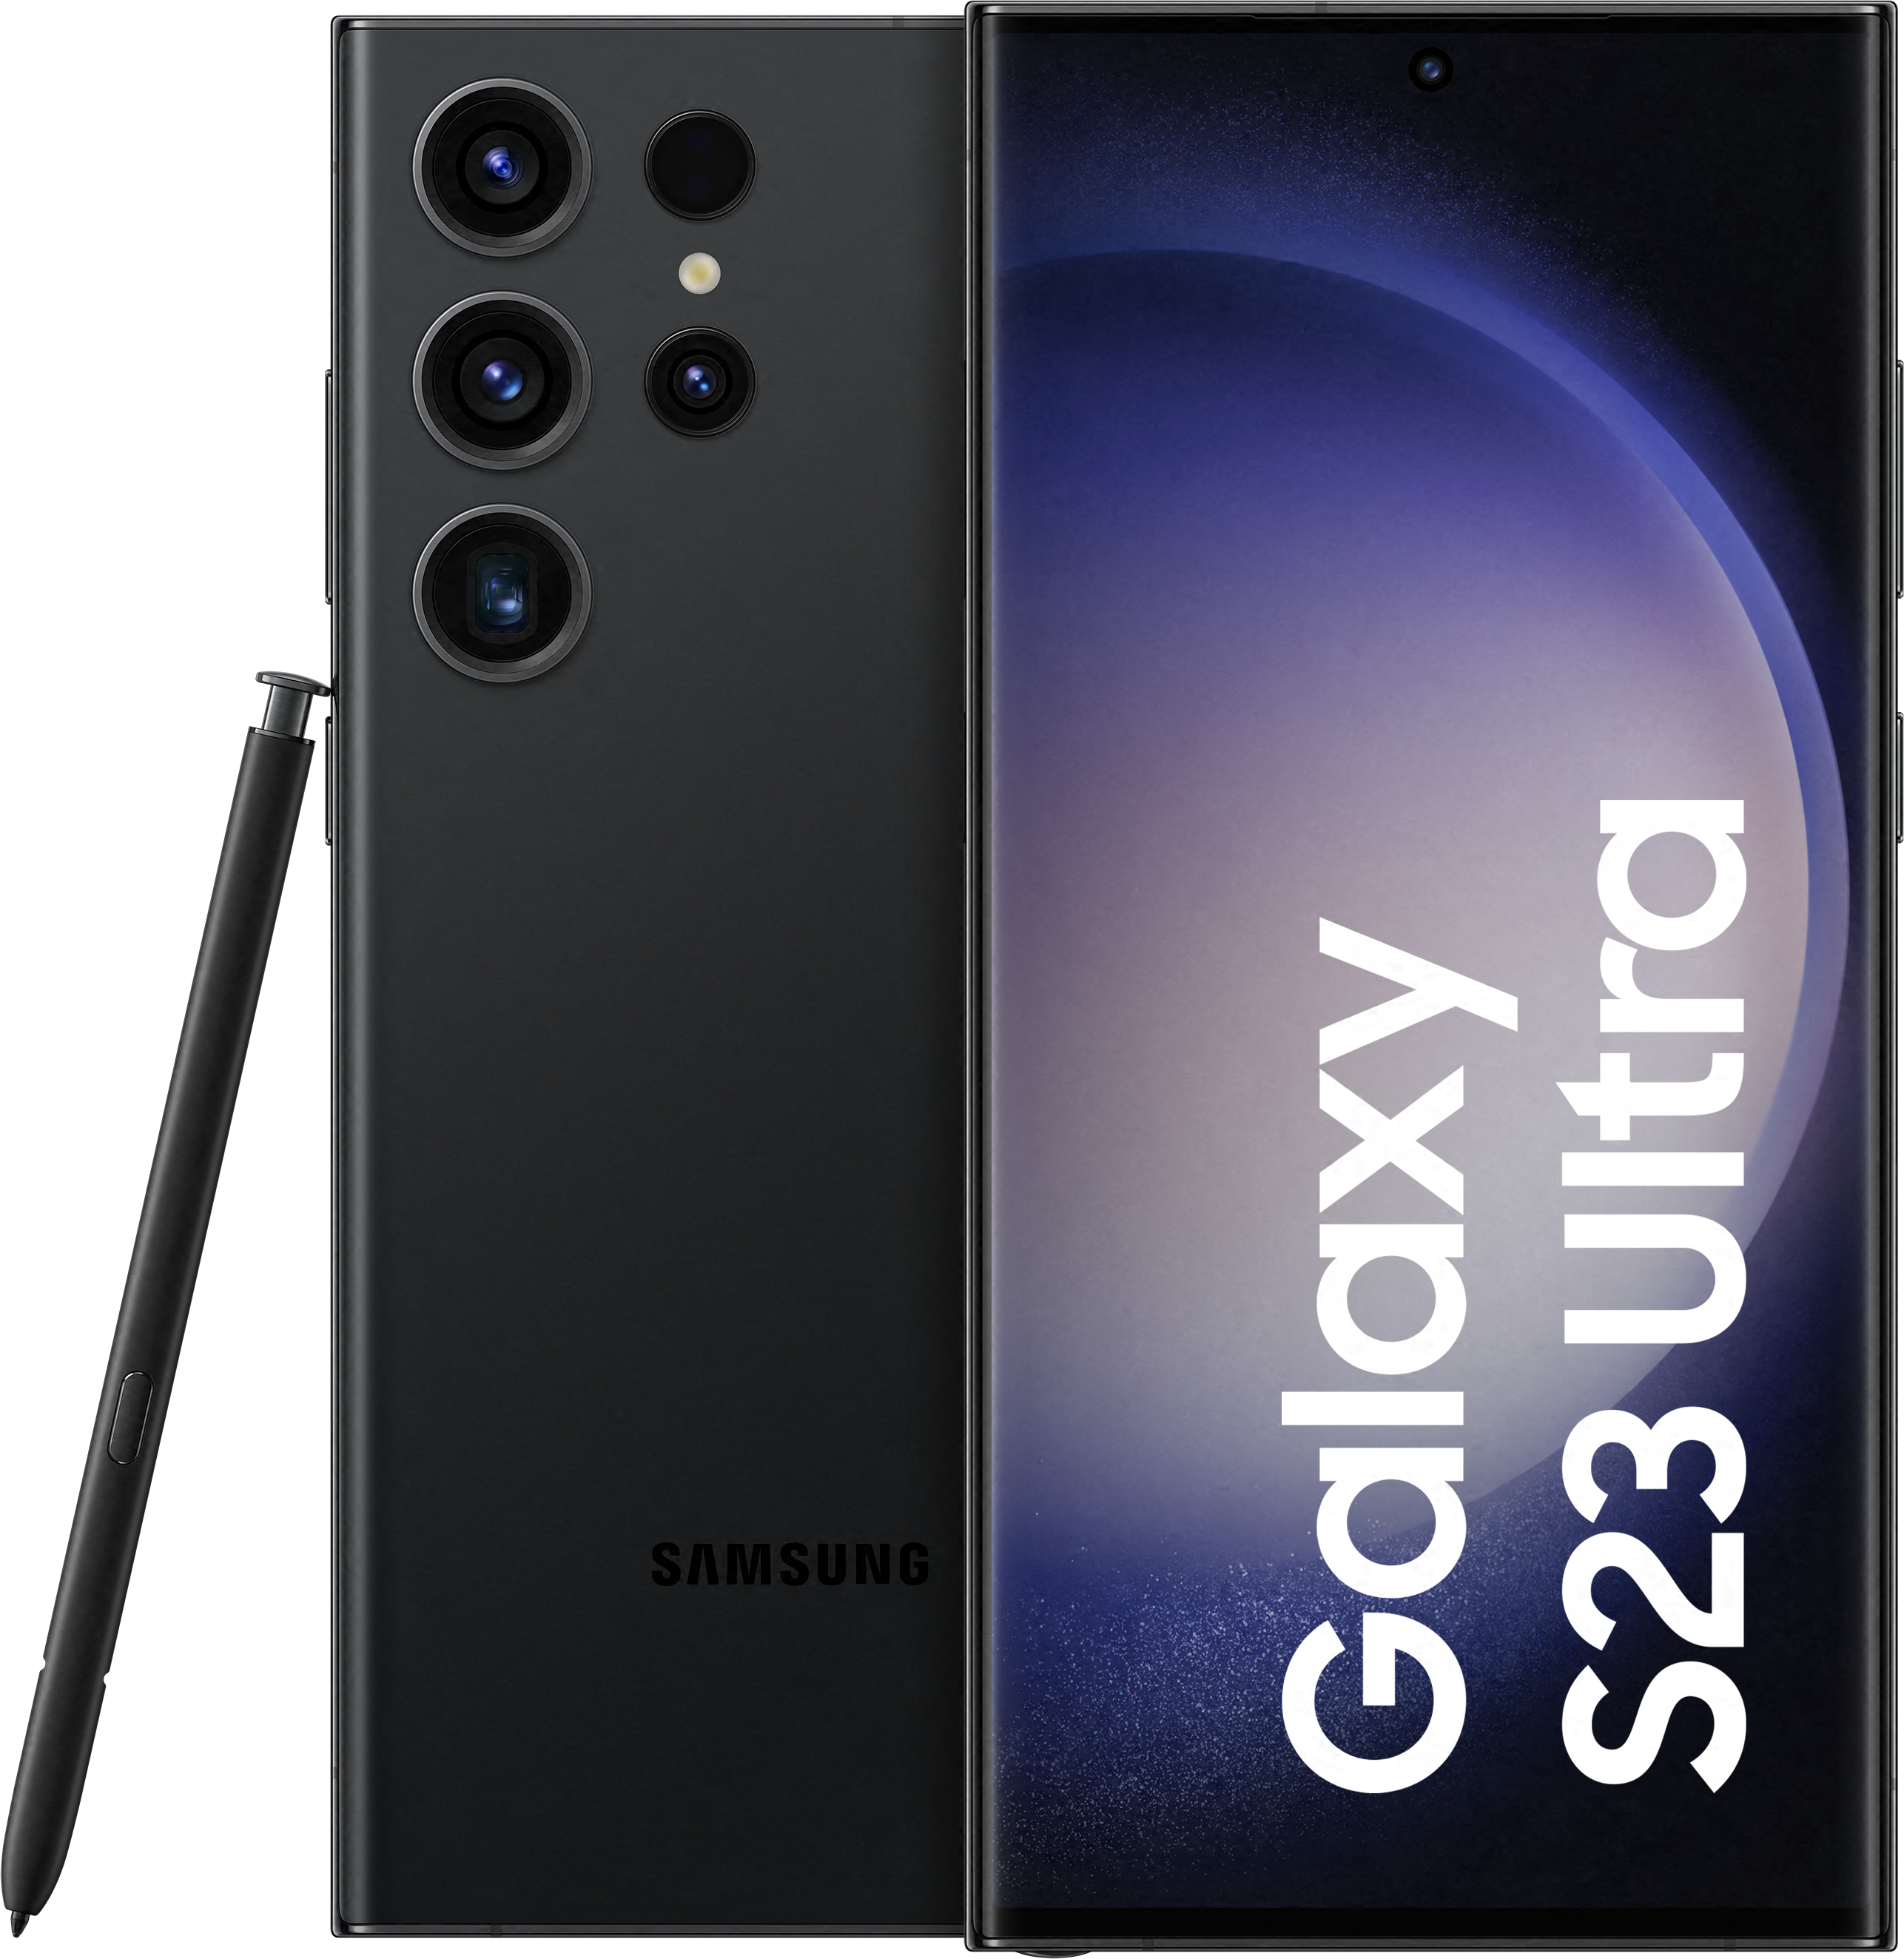 Samsung Galaxy S24 Ultra mit Vertrag bei 1&1 bestellen